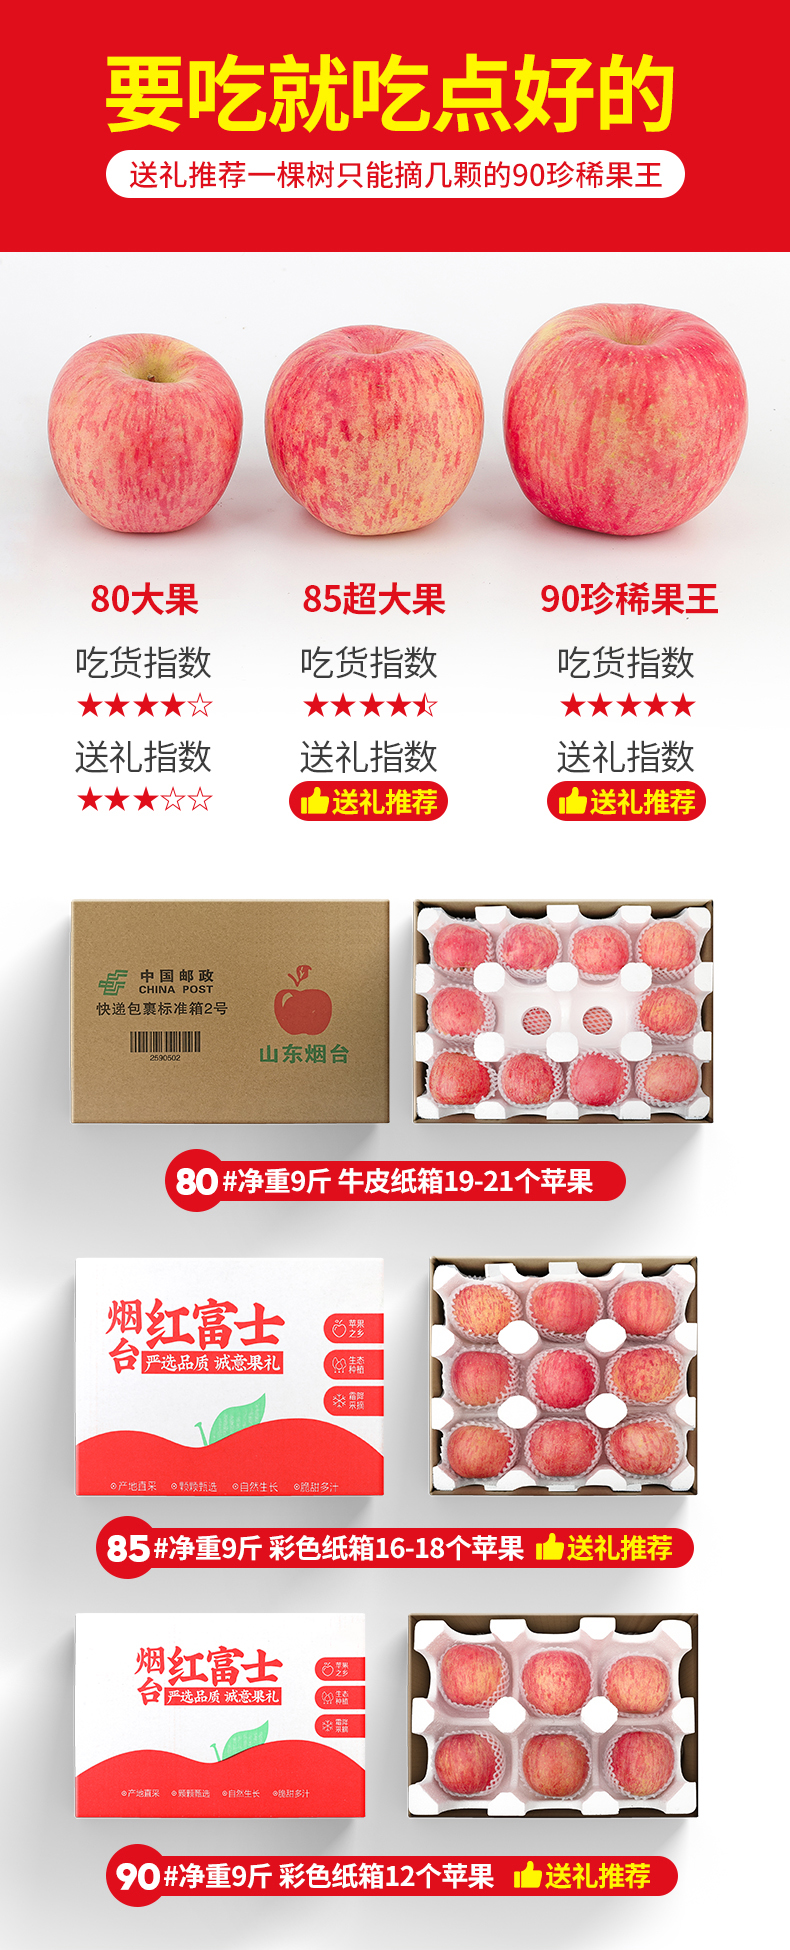 有机红富士苹果价格_洛川红富士苹果相关-南京平头金计算机有限公司